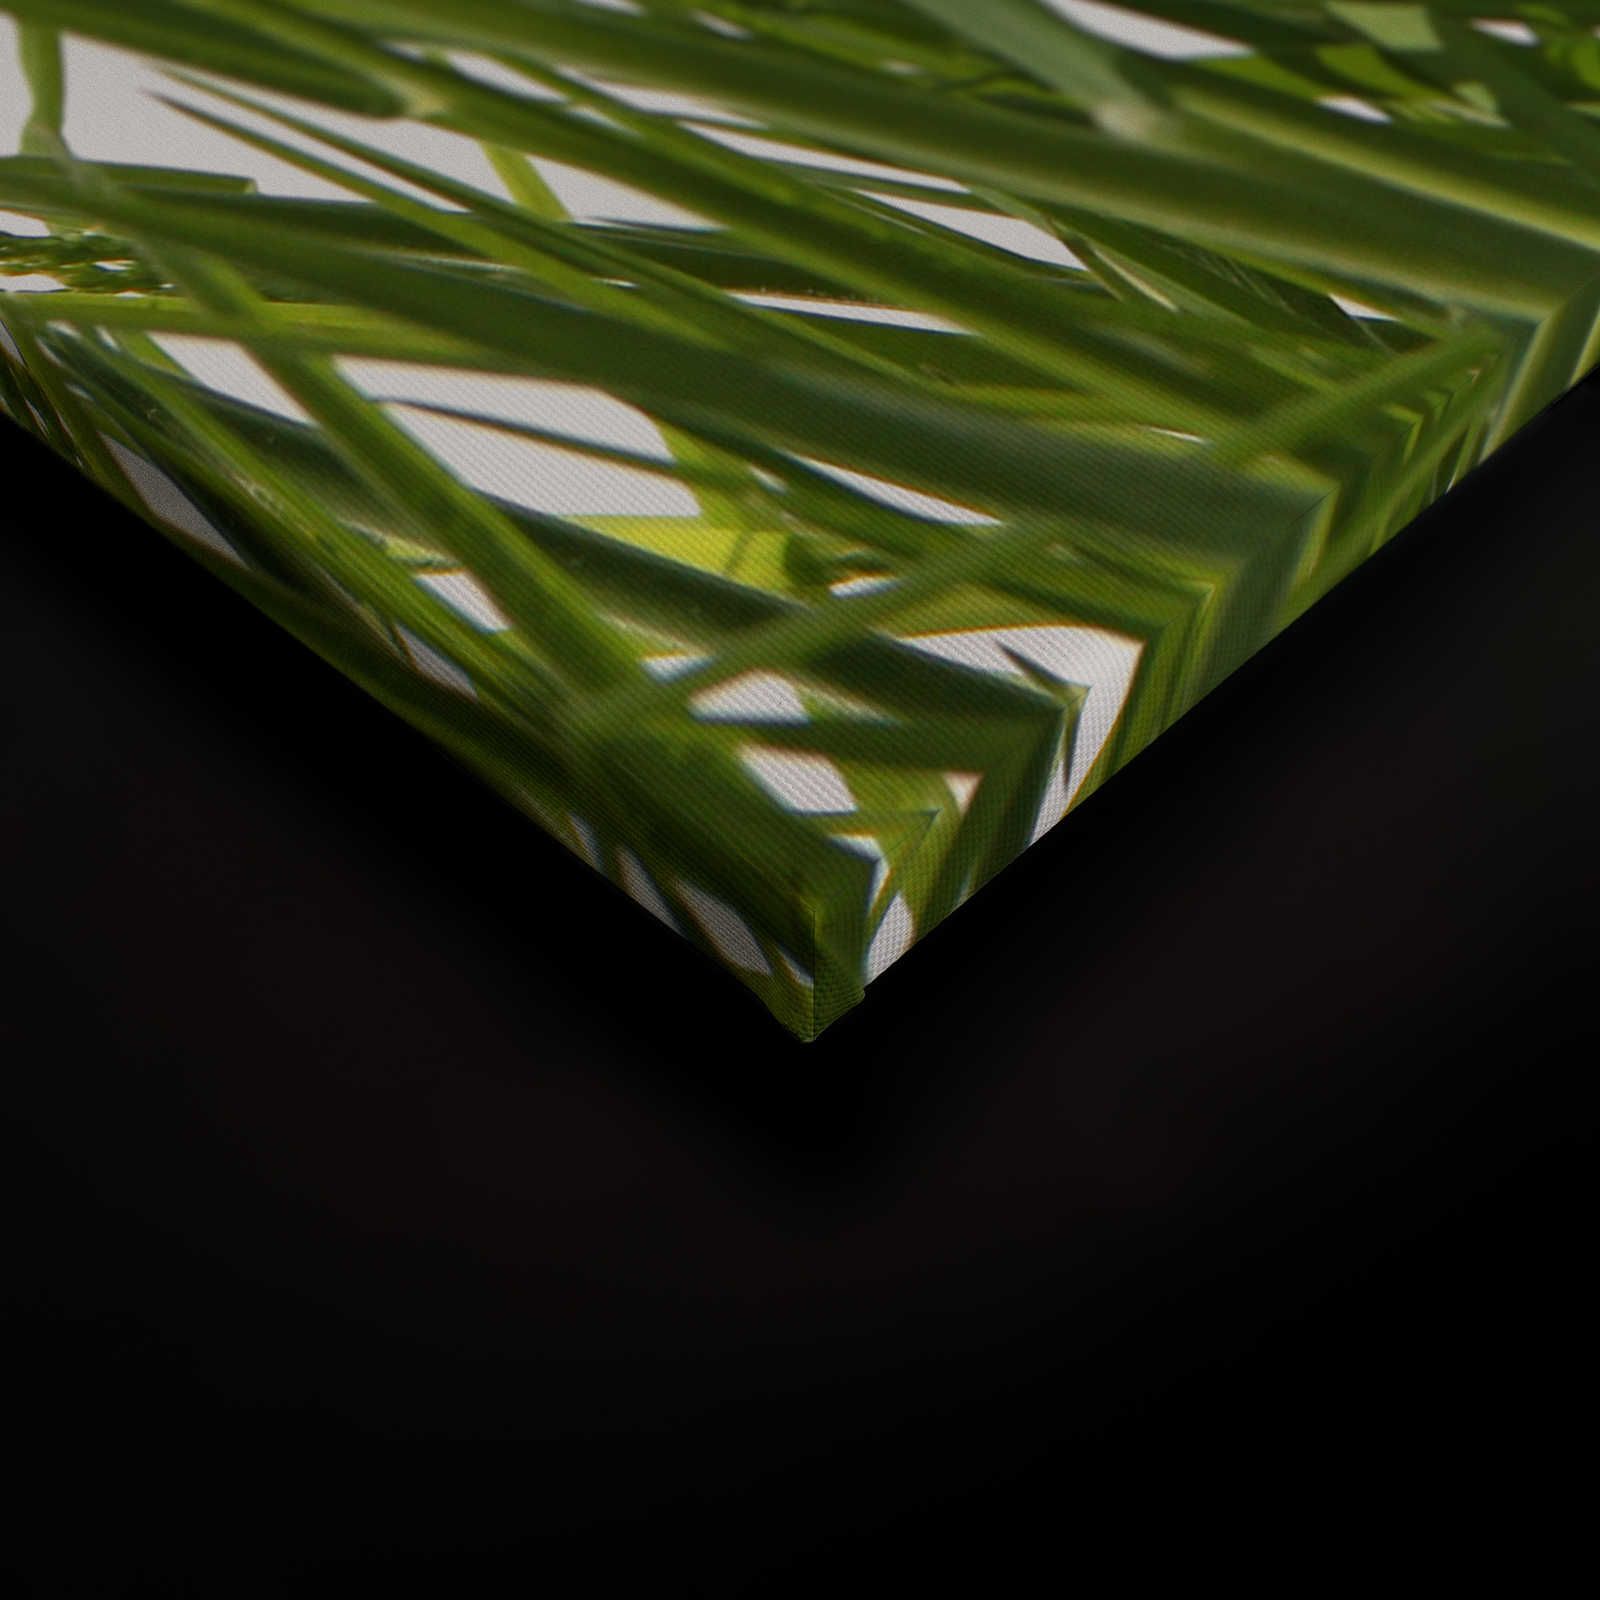             Leinwandbild Gräser Detail mit weißem Hintergrund – 1,20 m x 0,80 m
        